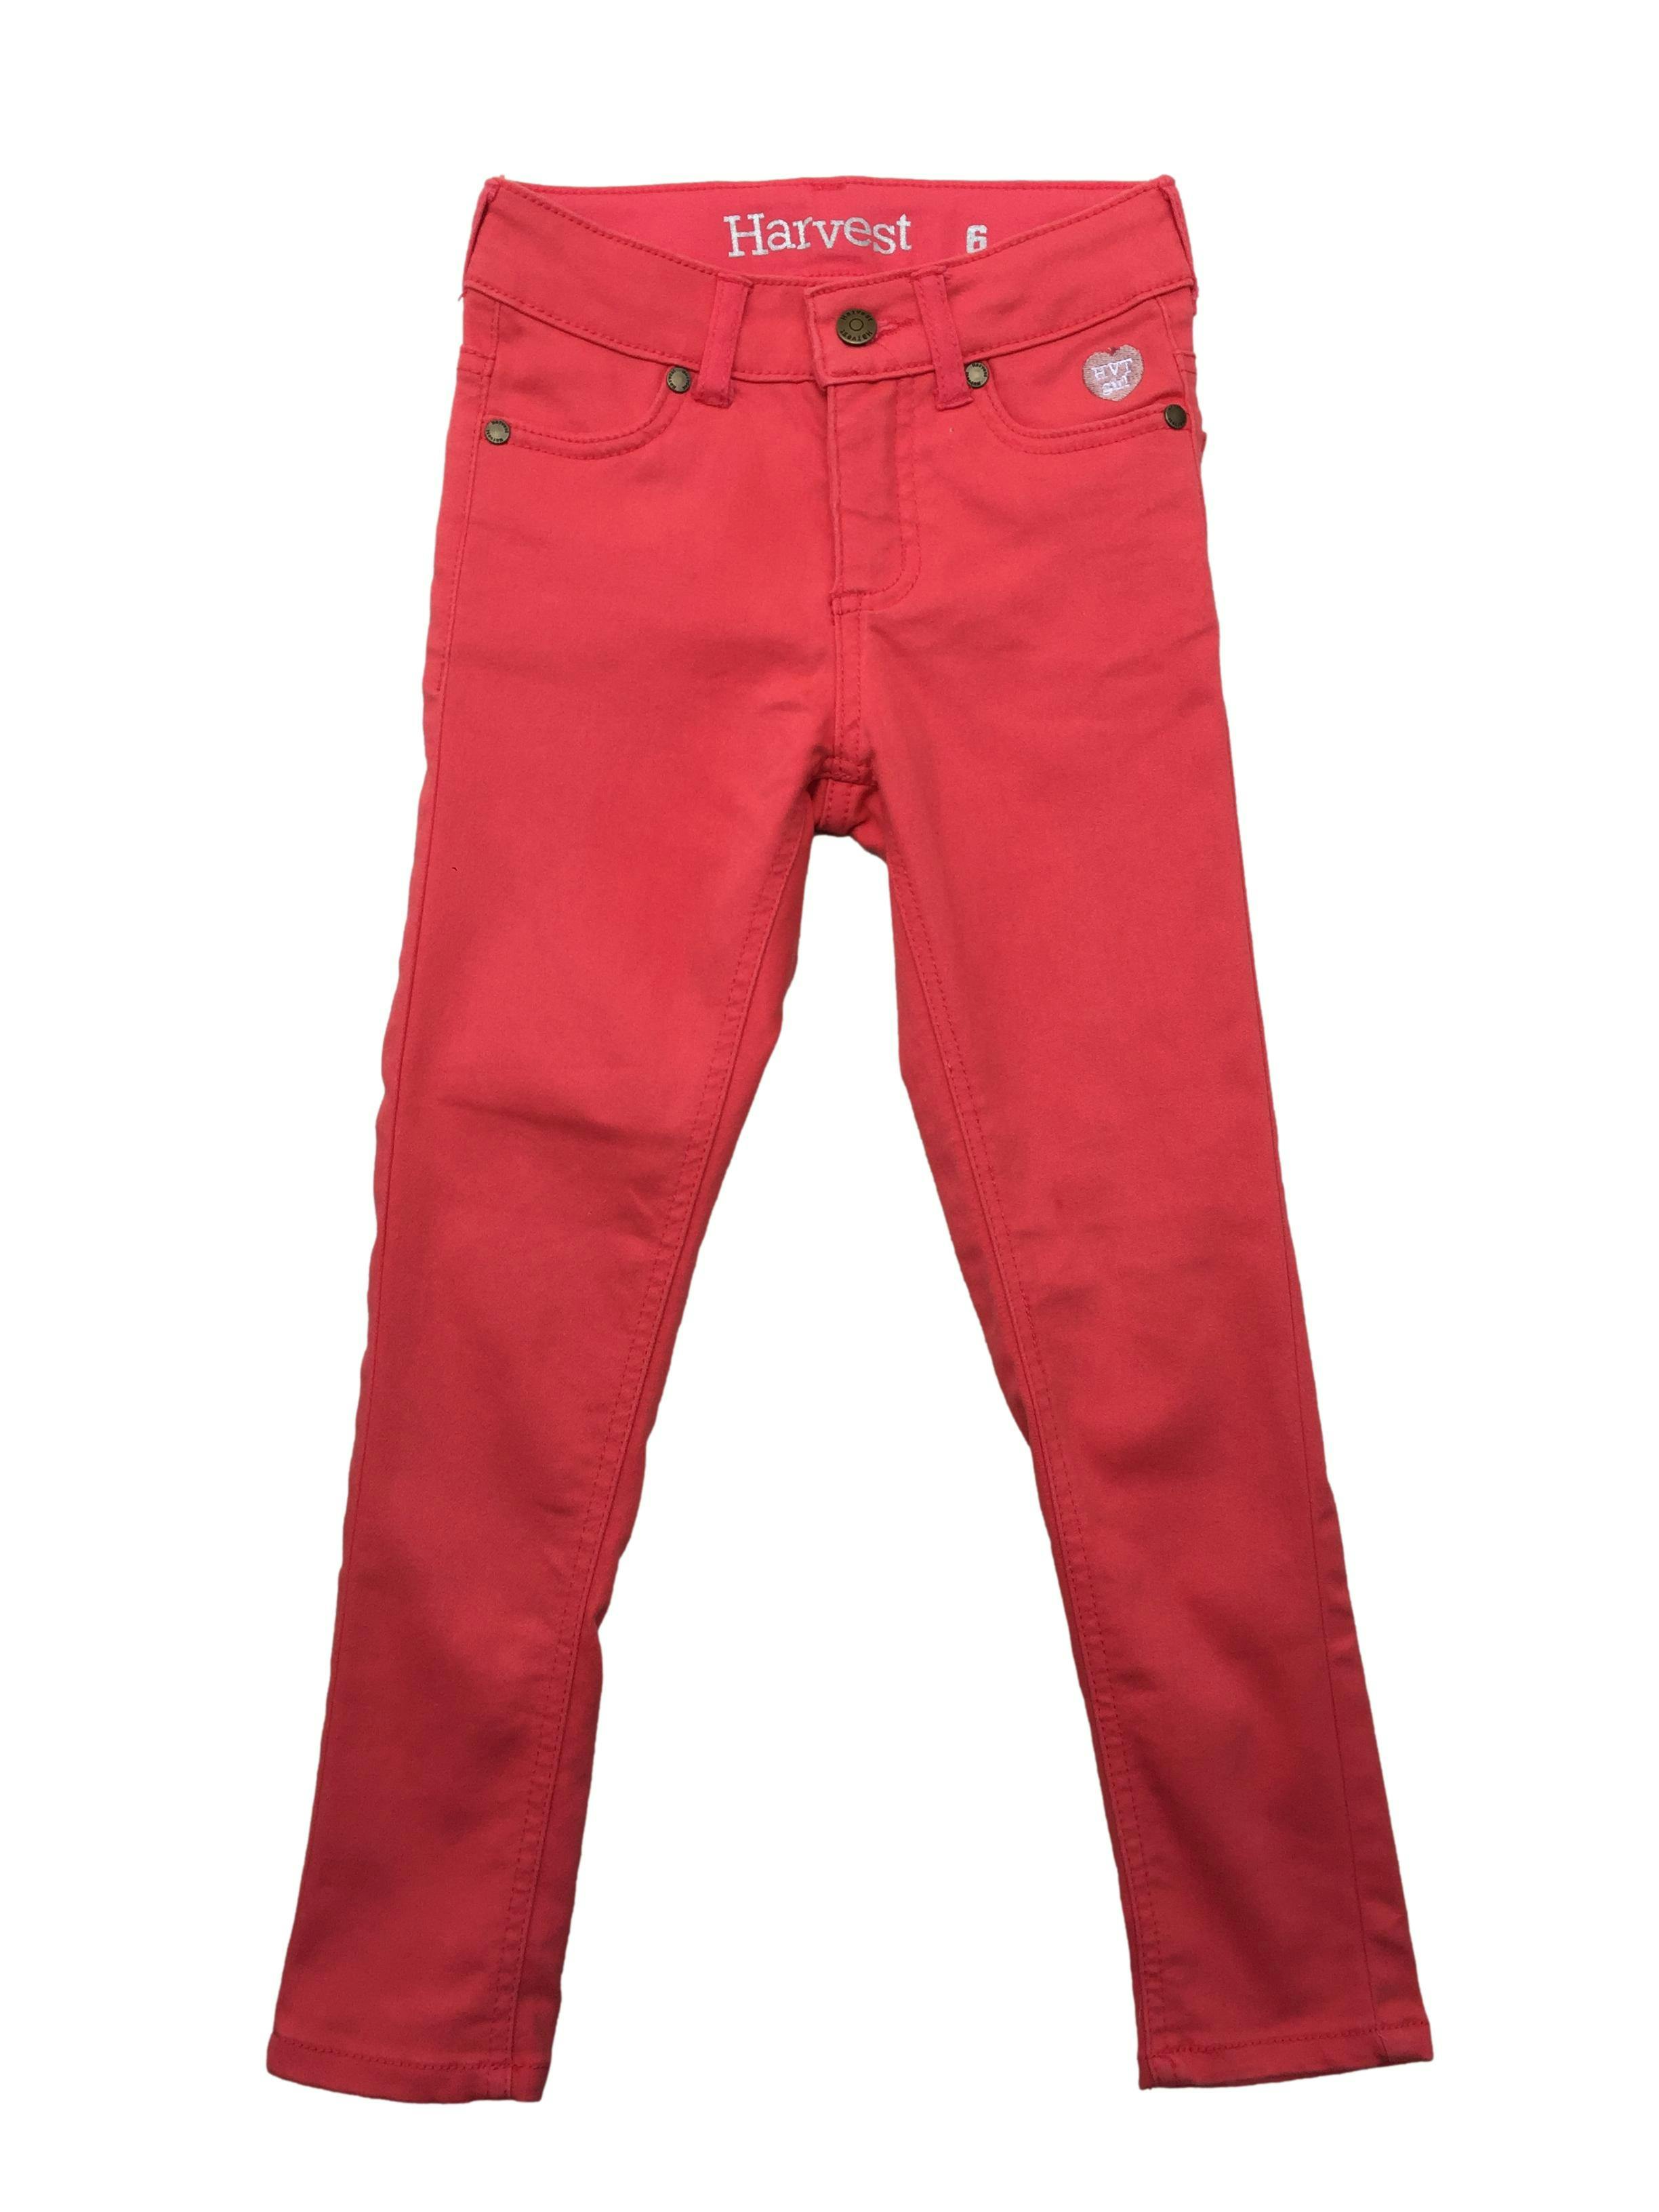 Pantalón Harvest rosado chicle, botón y cierre delantero, bolsillos.